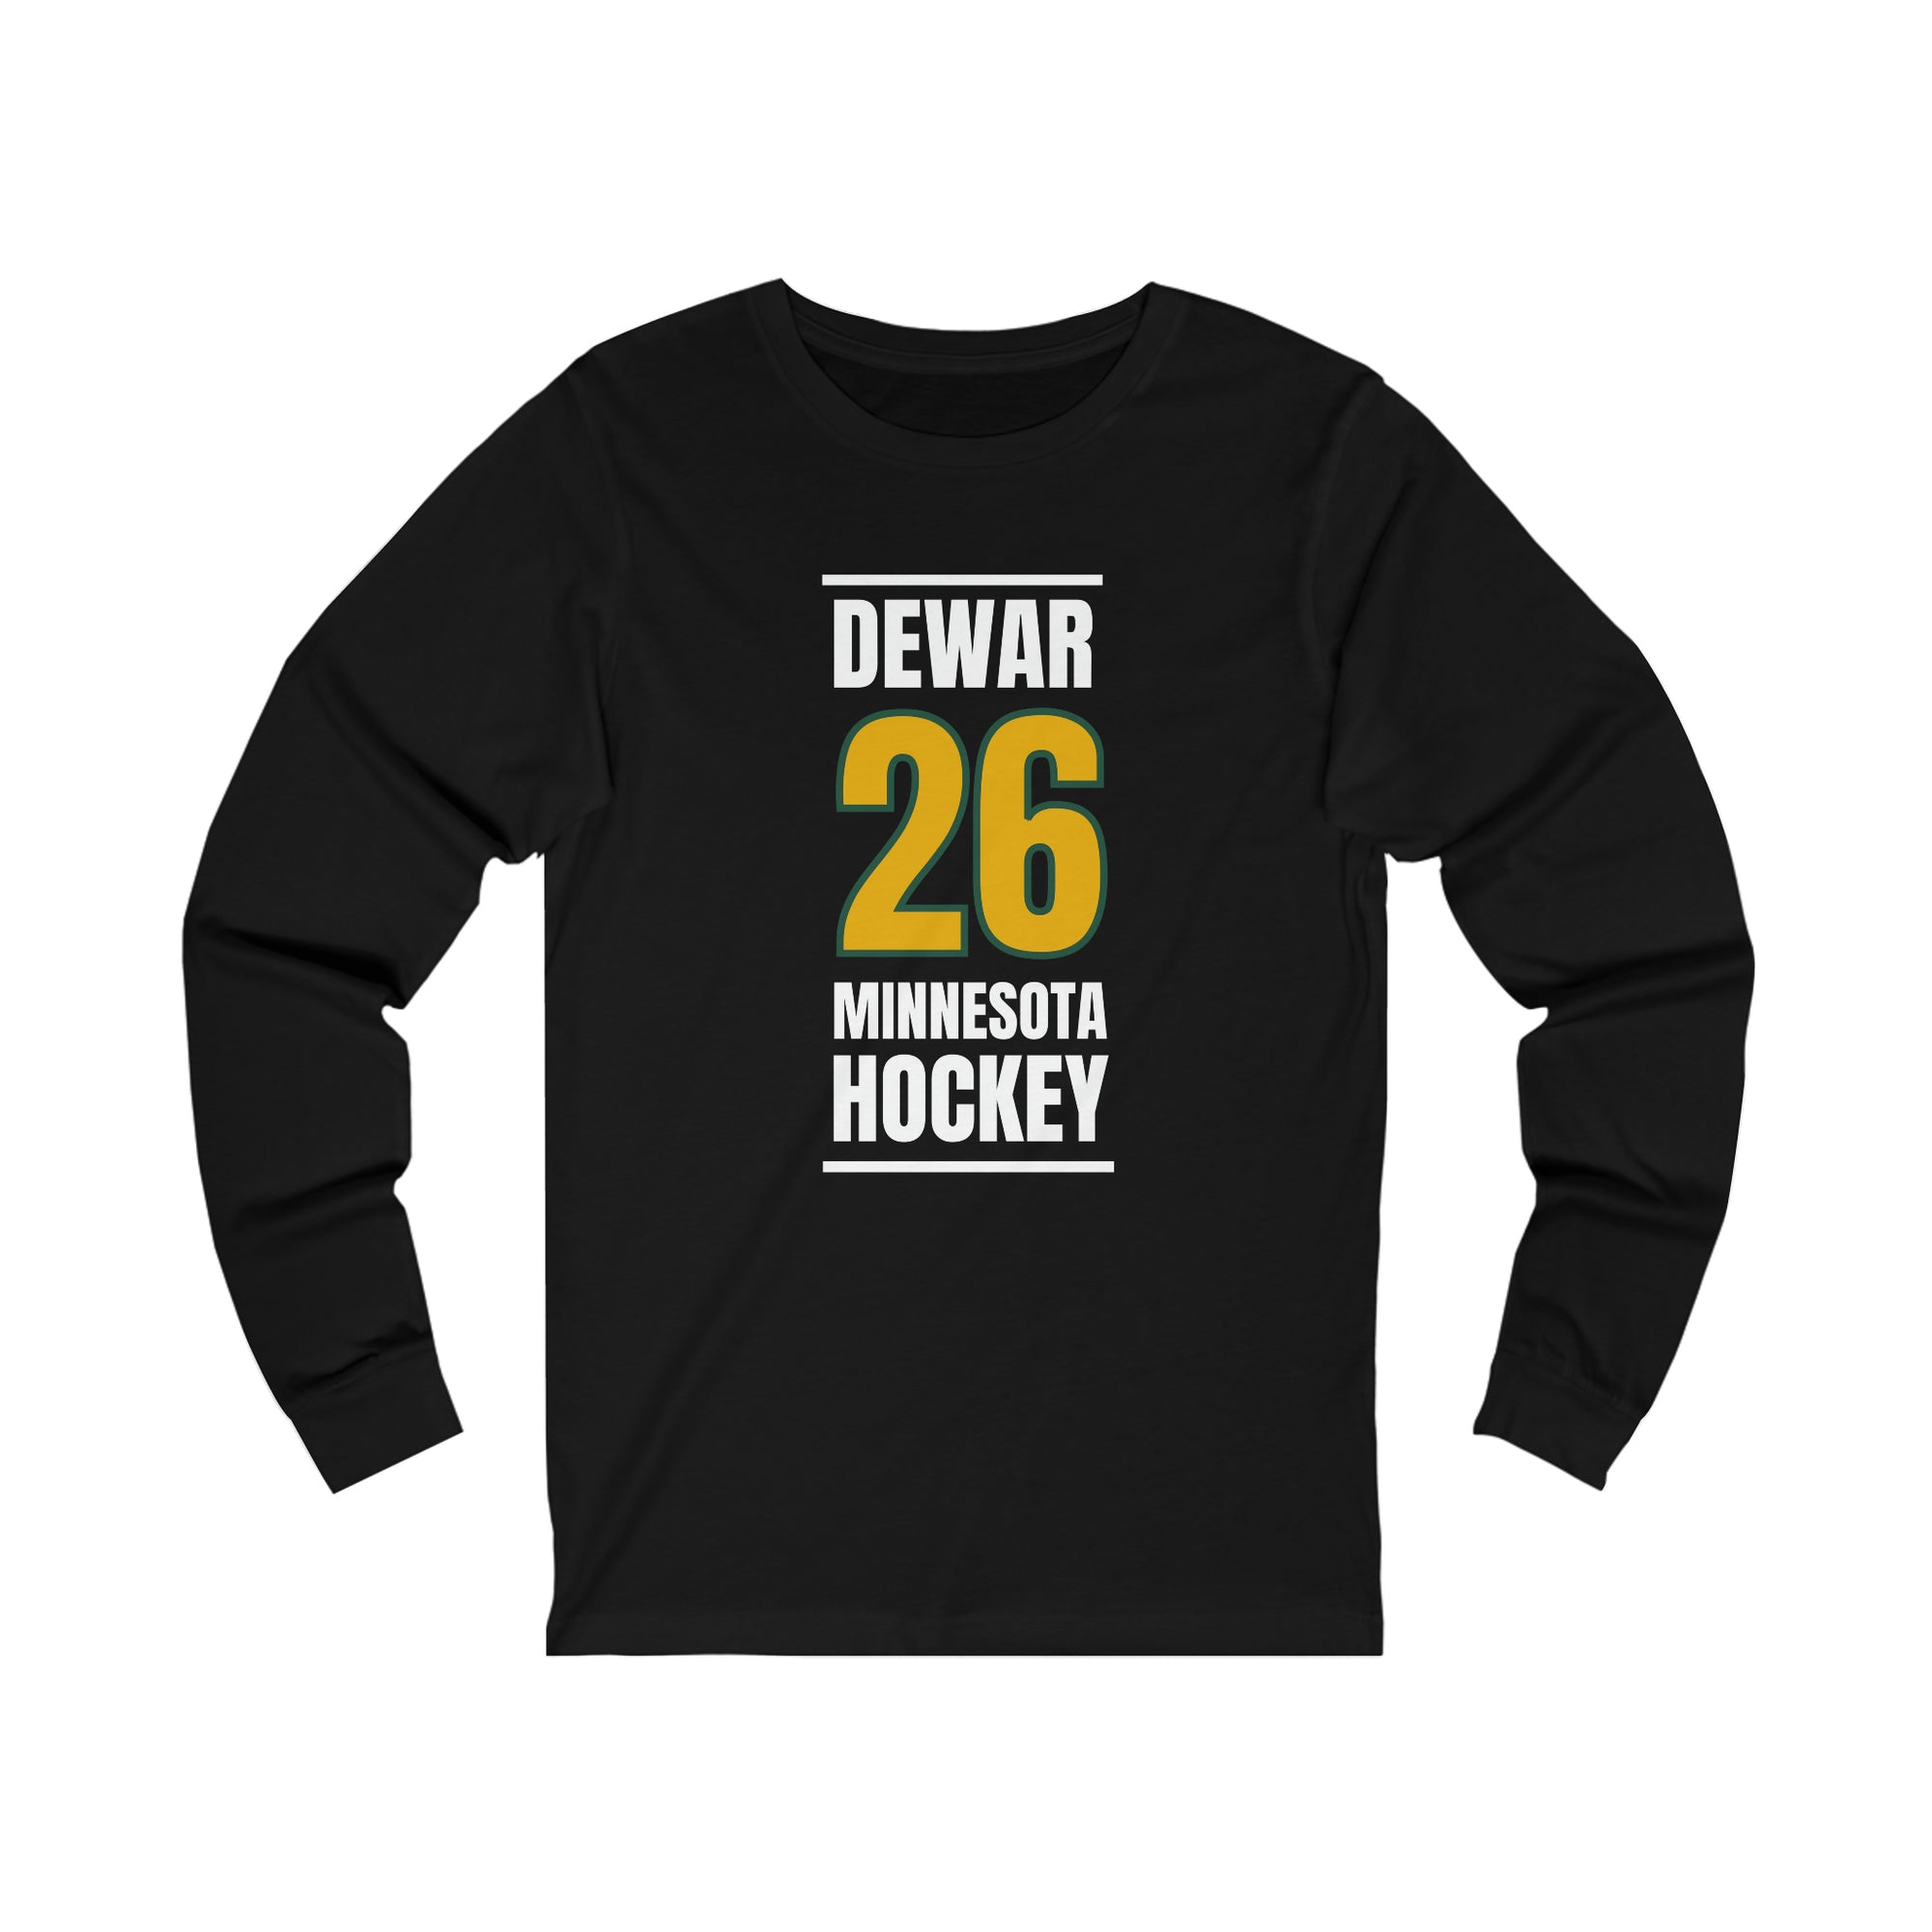 Dewar 26 Minnesota Hockey Gold Vertical Design Unisex Jersey Long Sleeve Shirt